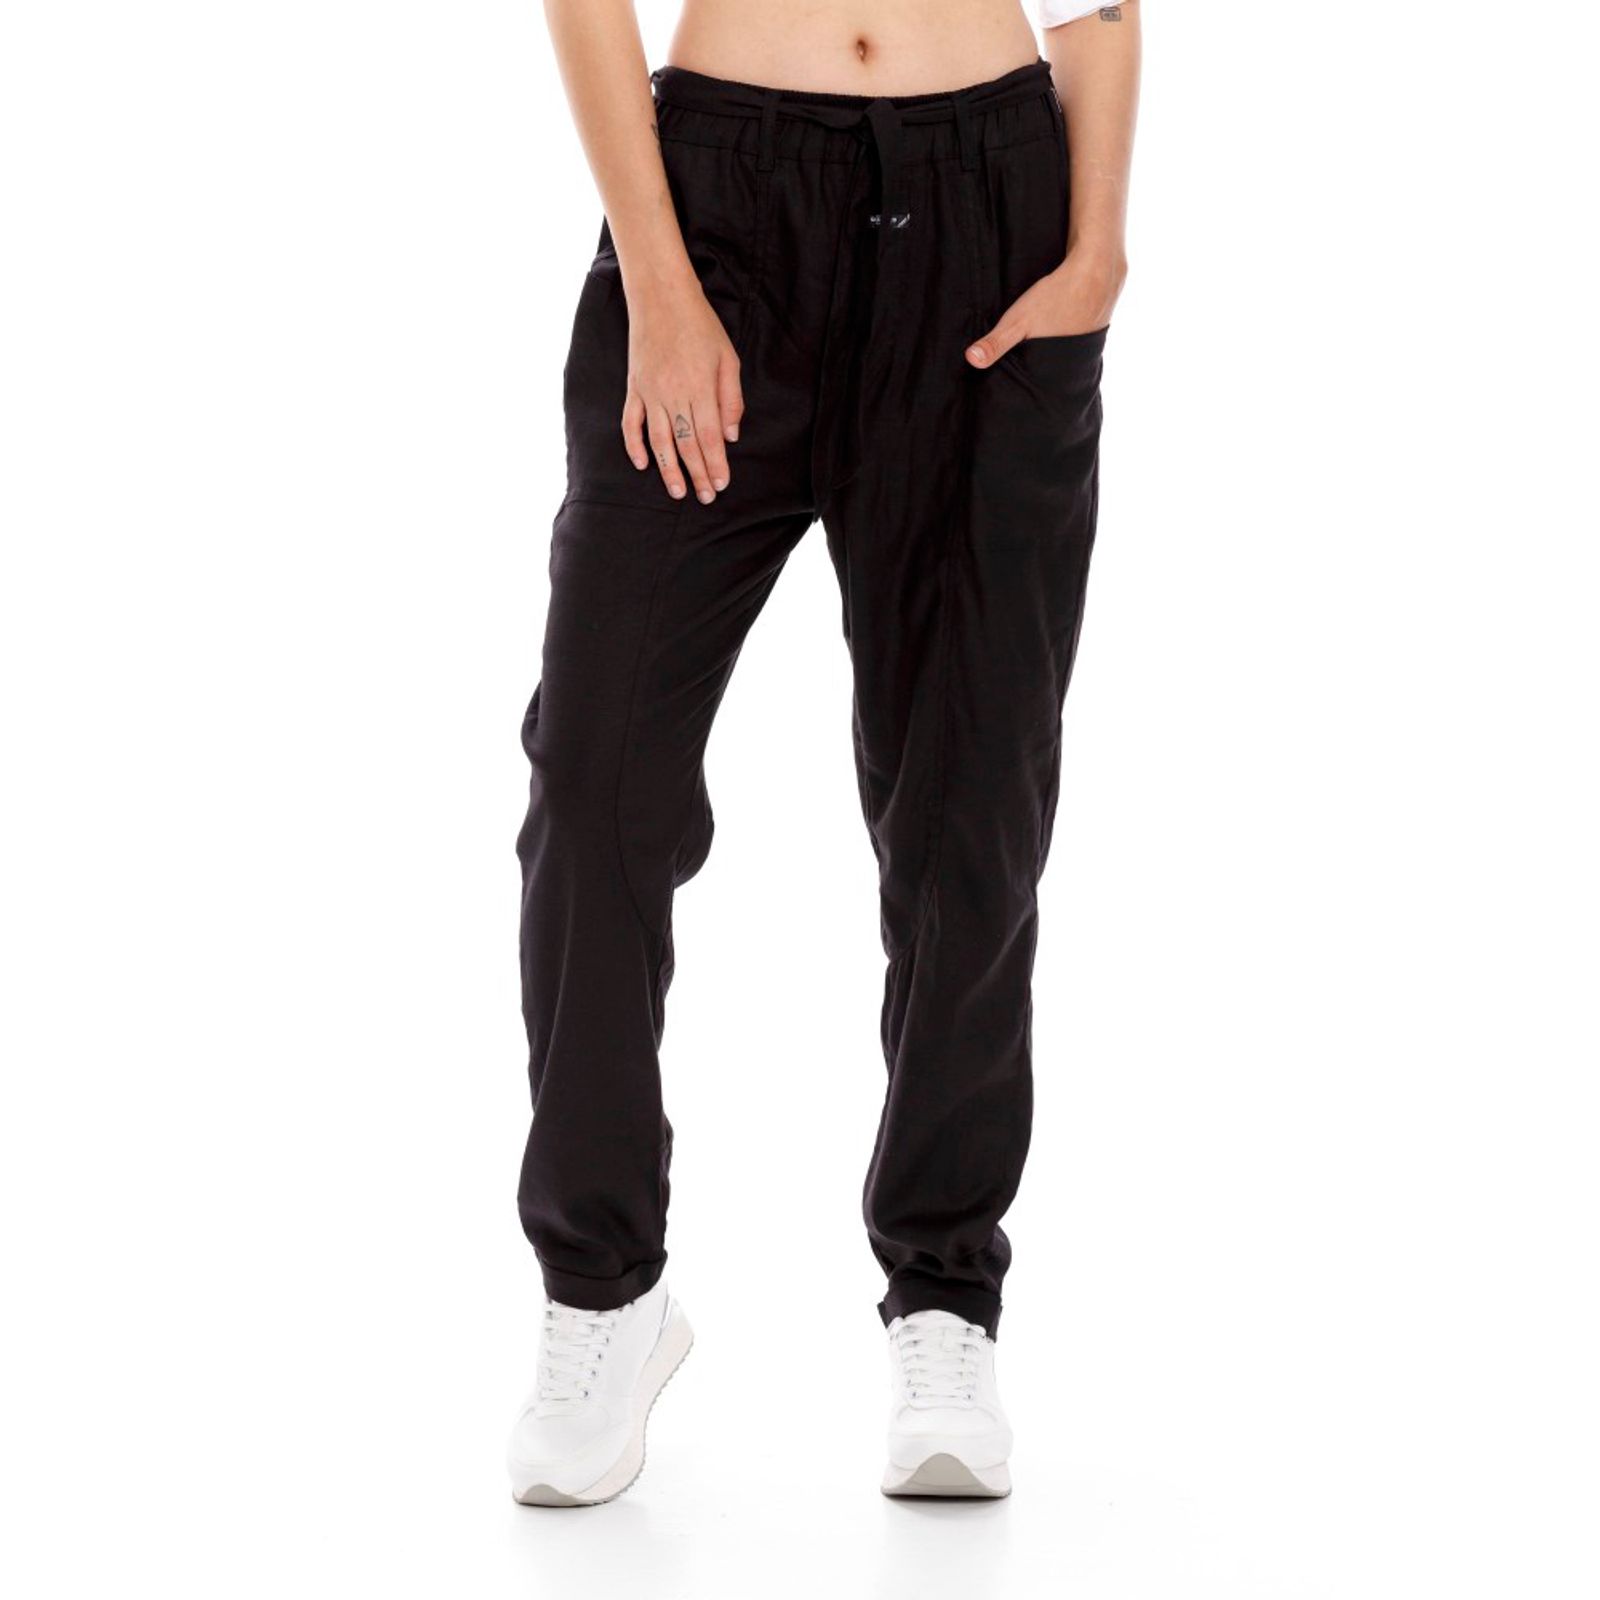 Pantalones chinos anchos para mujer regular fit - LP000928_005